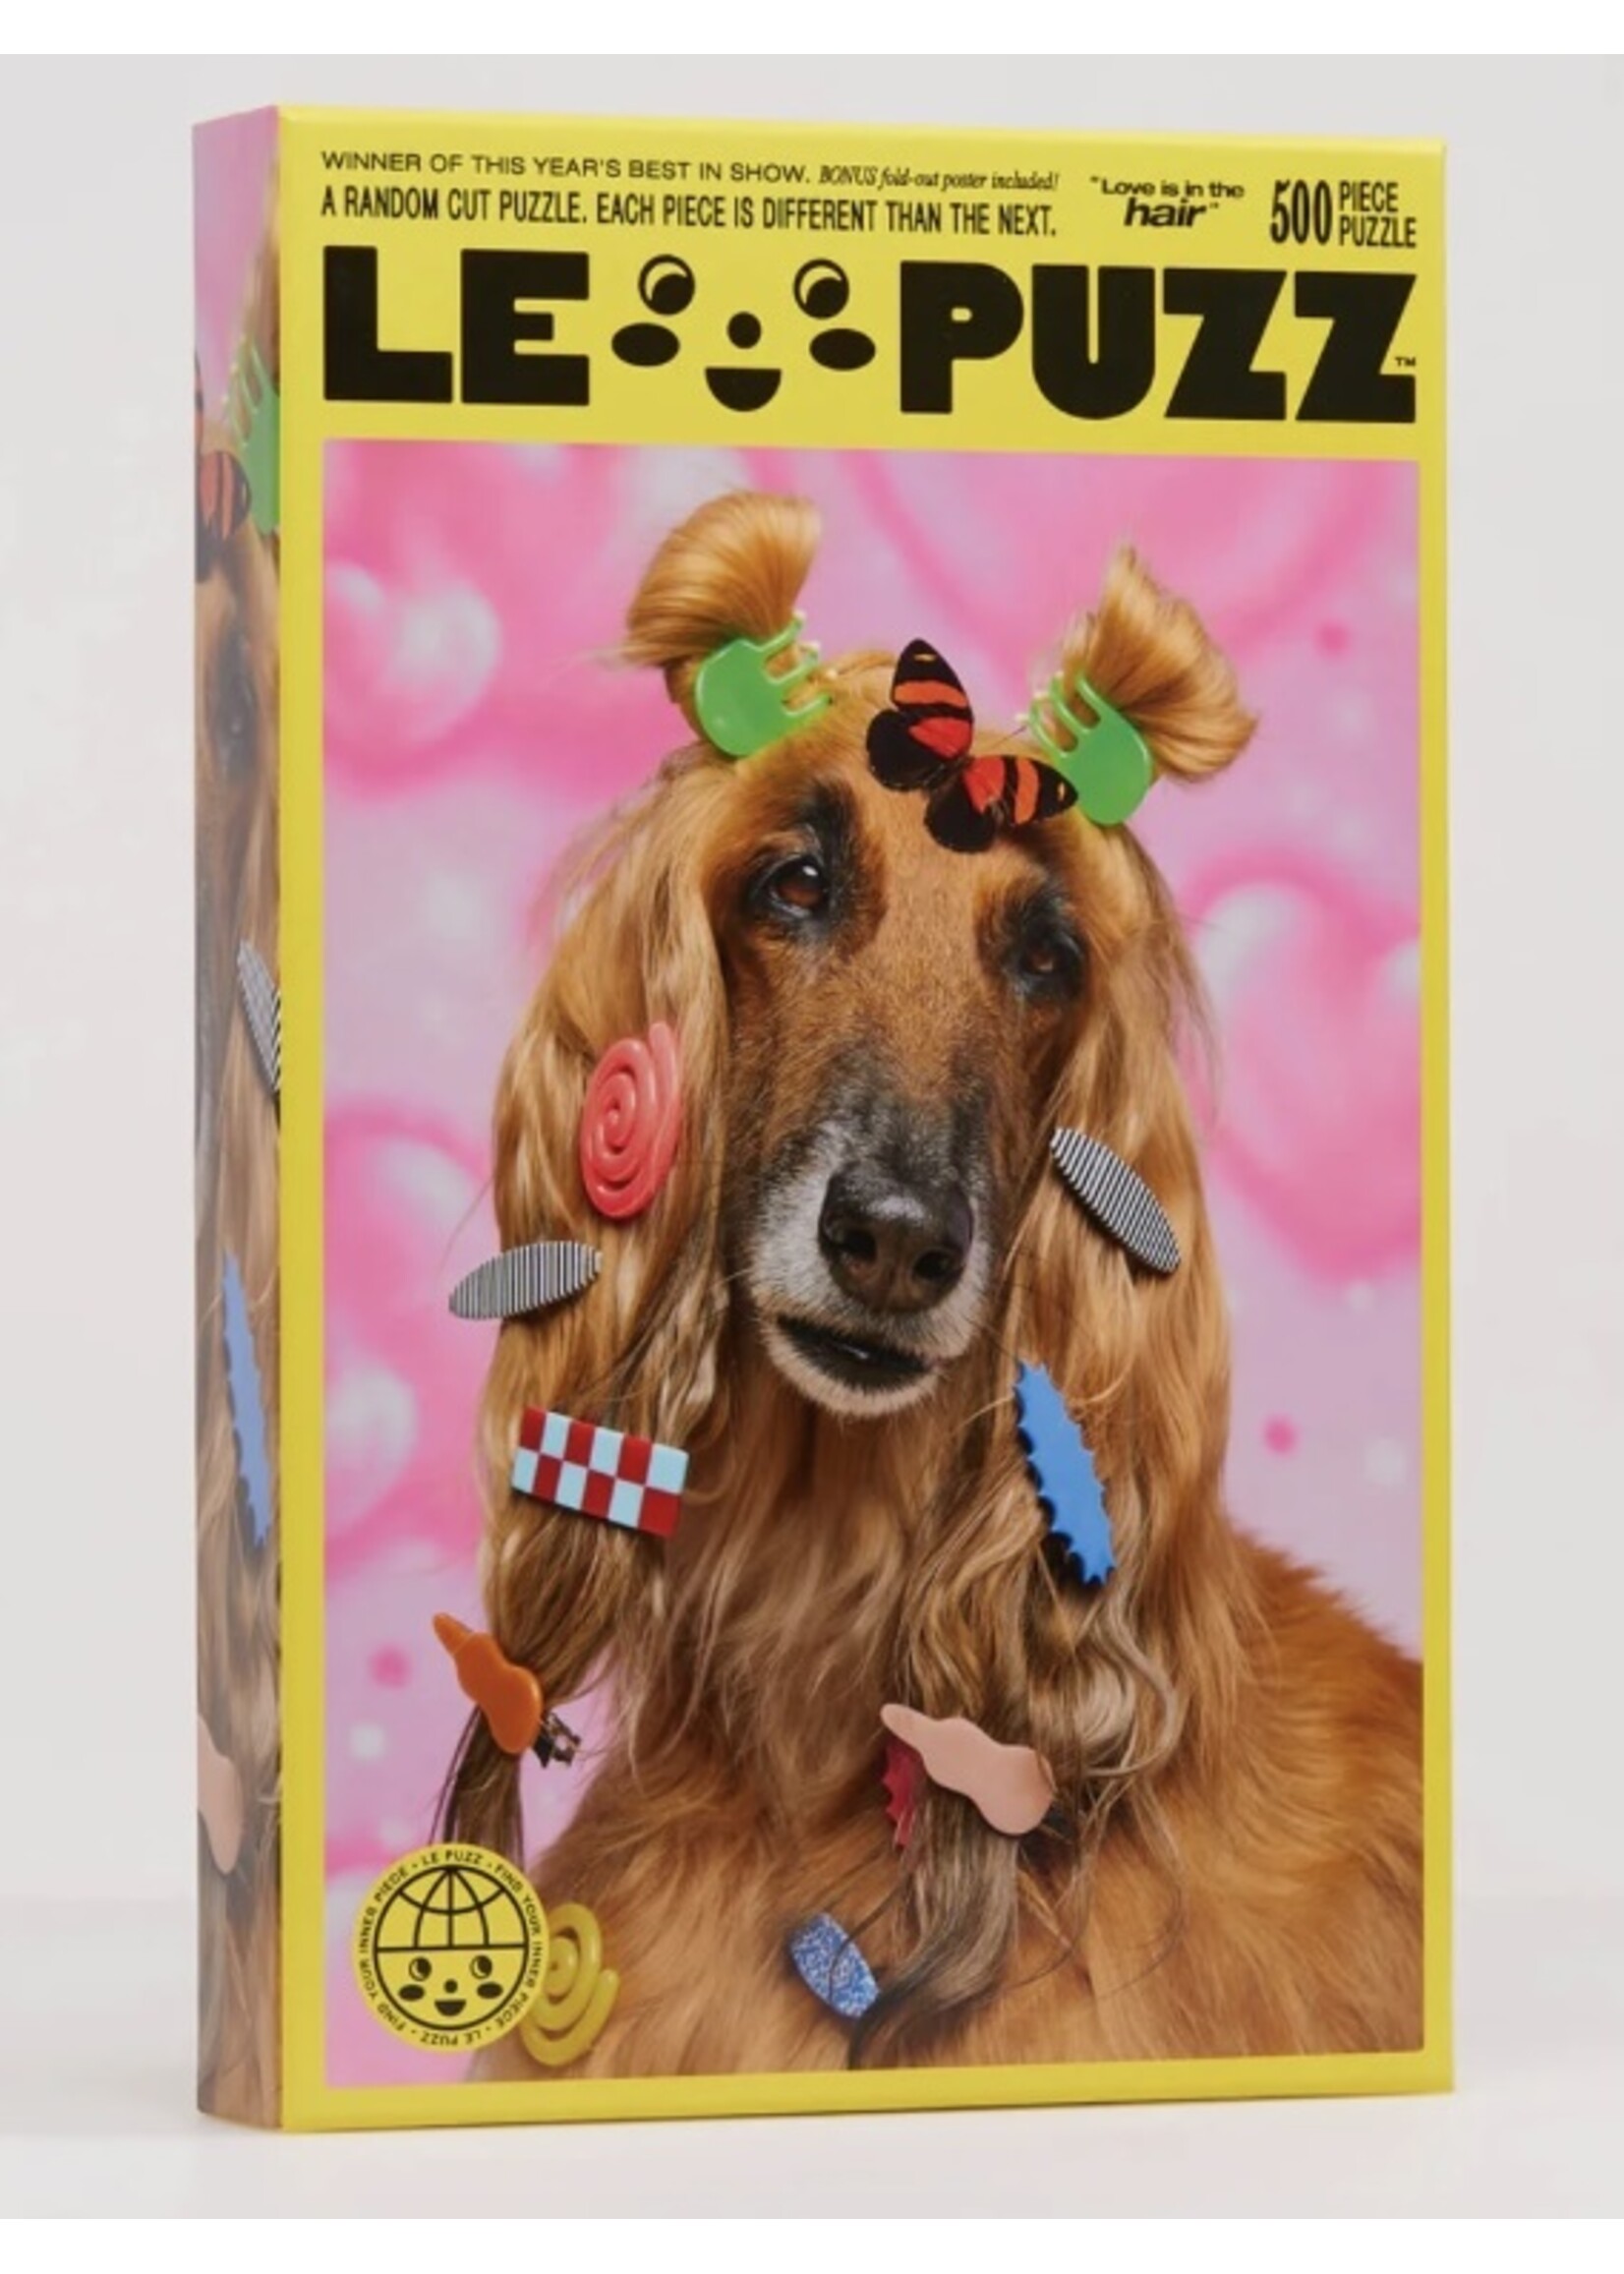 Le Puzz Casse-têtes "500 pièces" par LE PUZZ